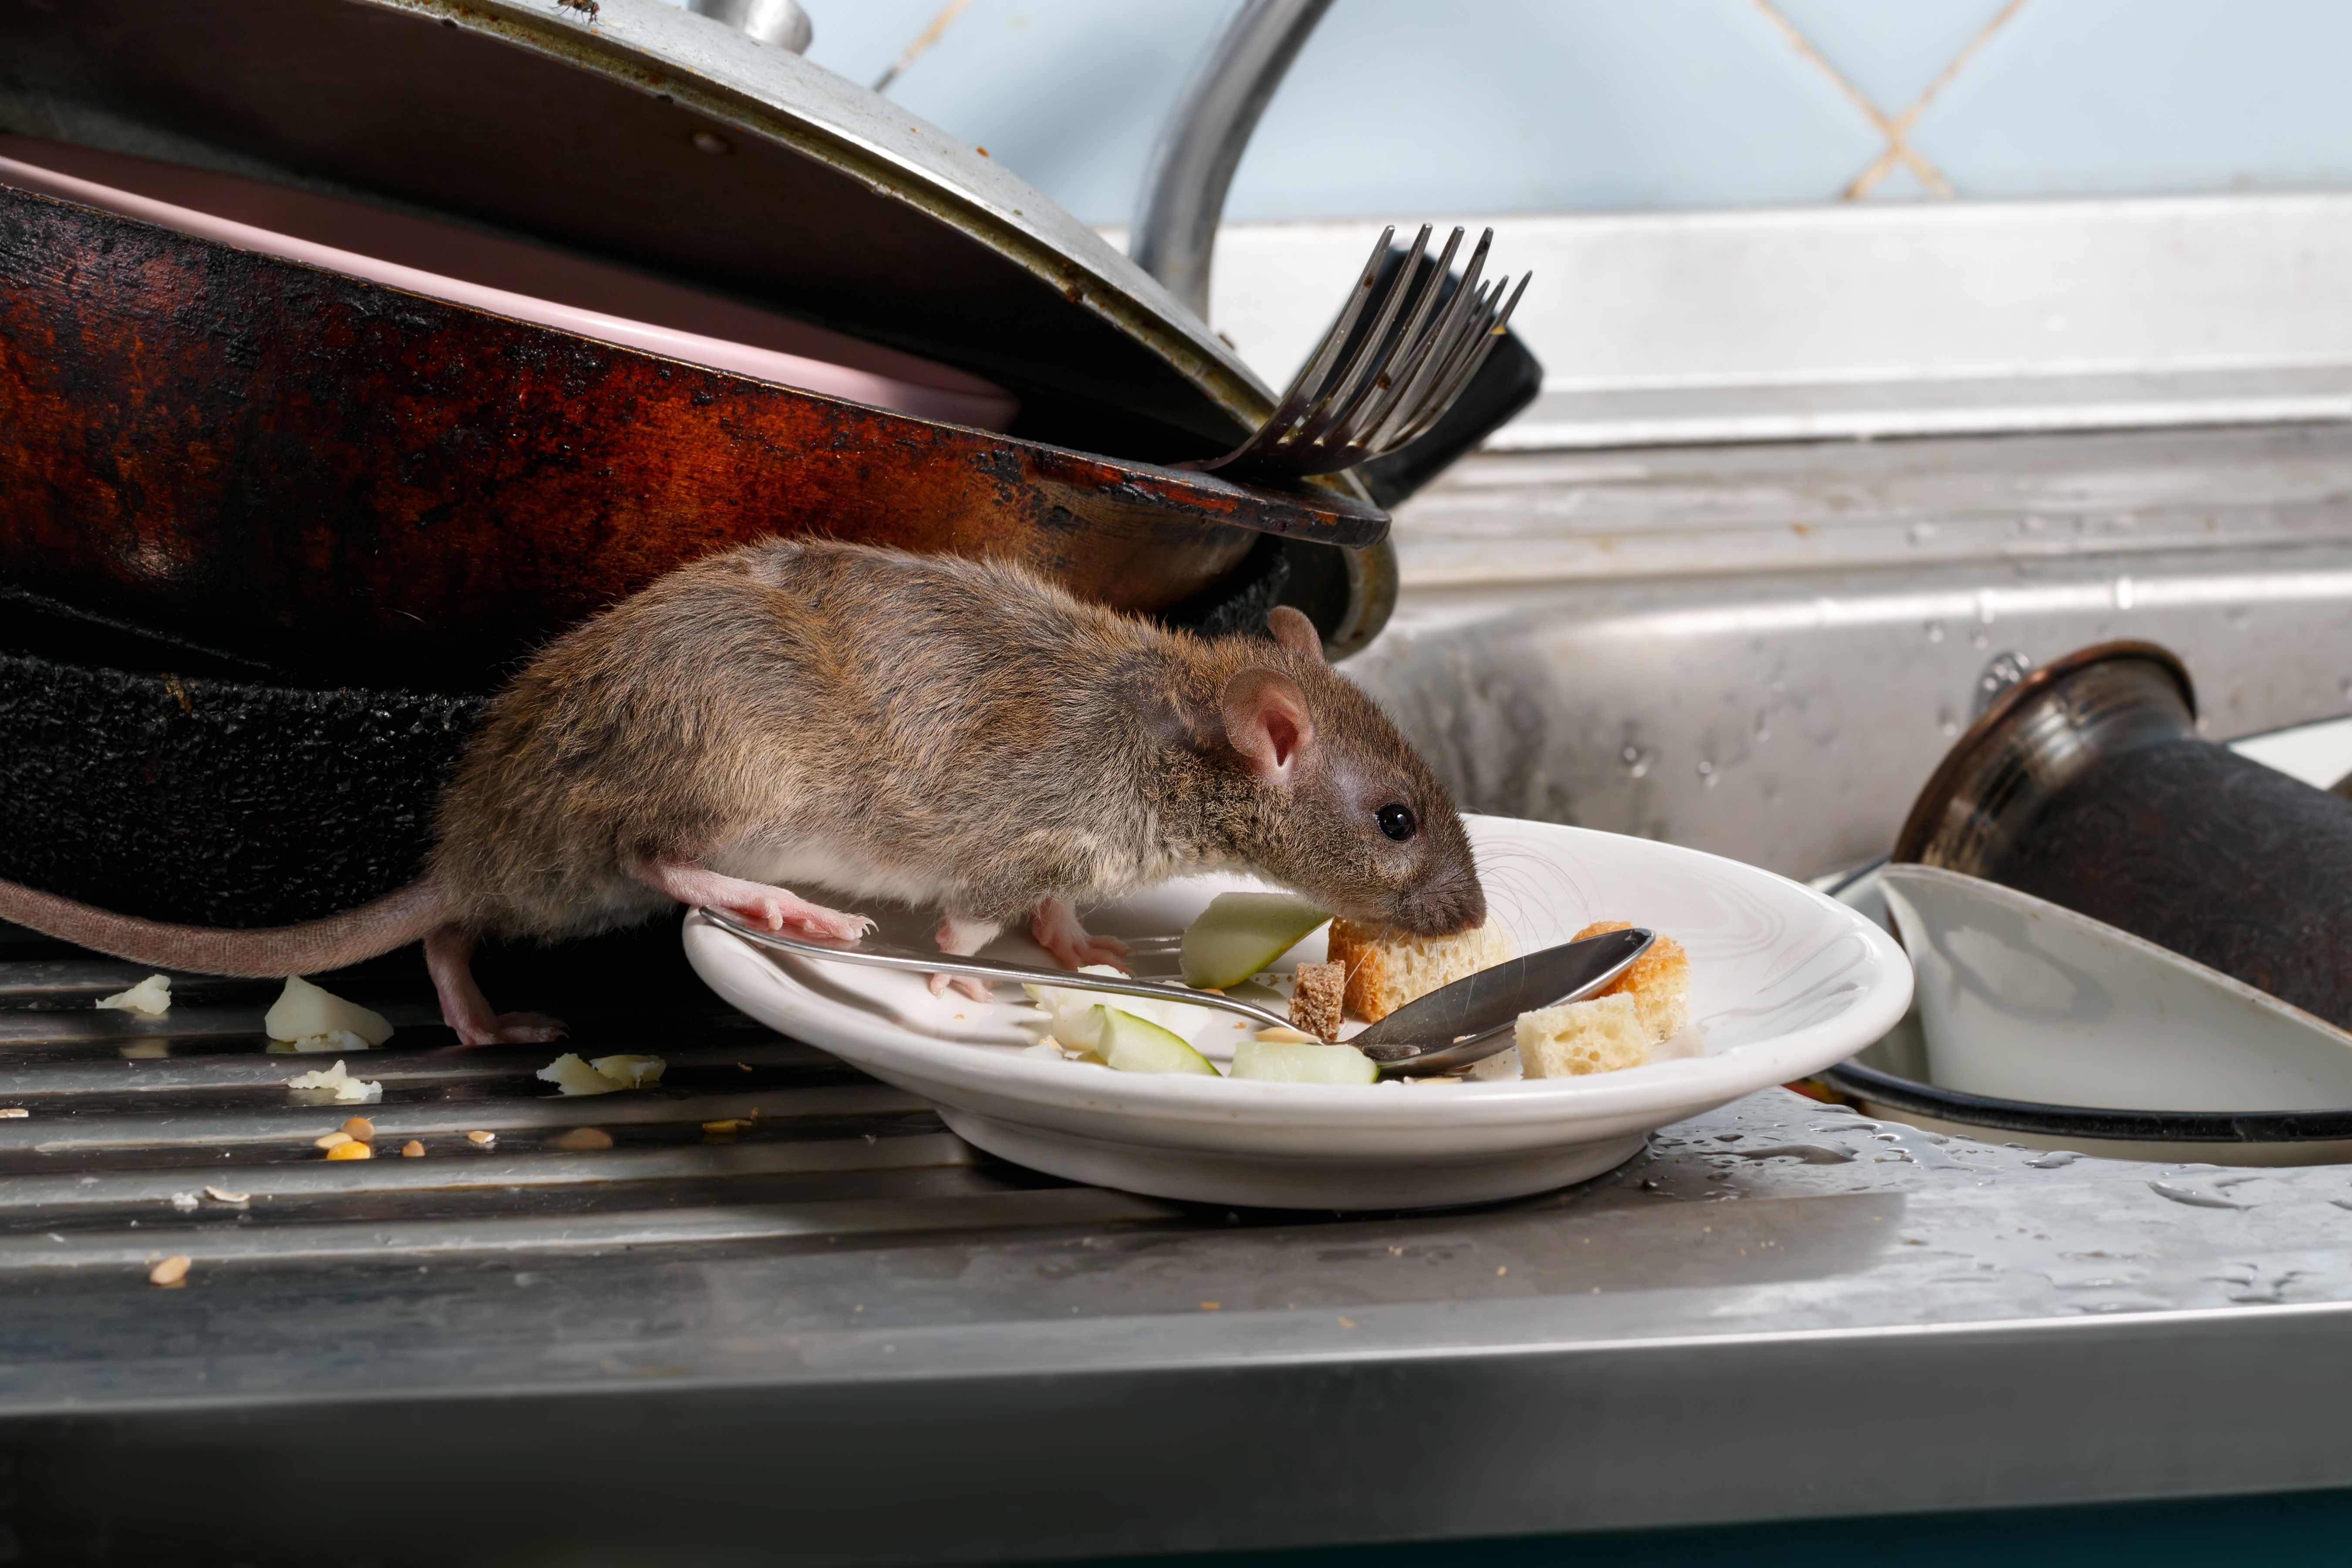 El veneno para ratas (rodenticidas) puede dañar a los niños y las